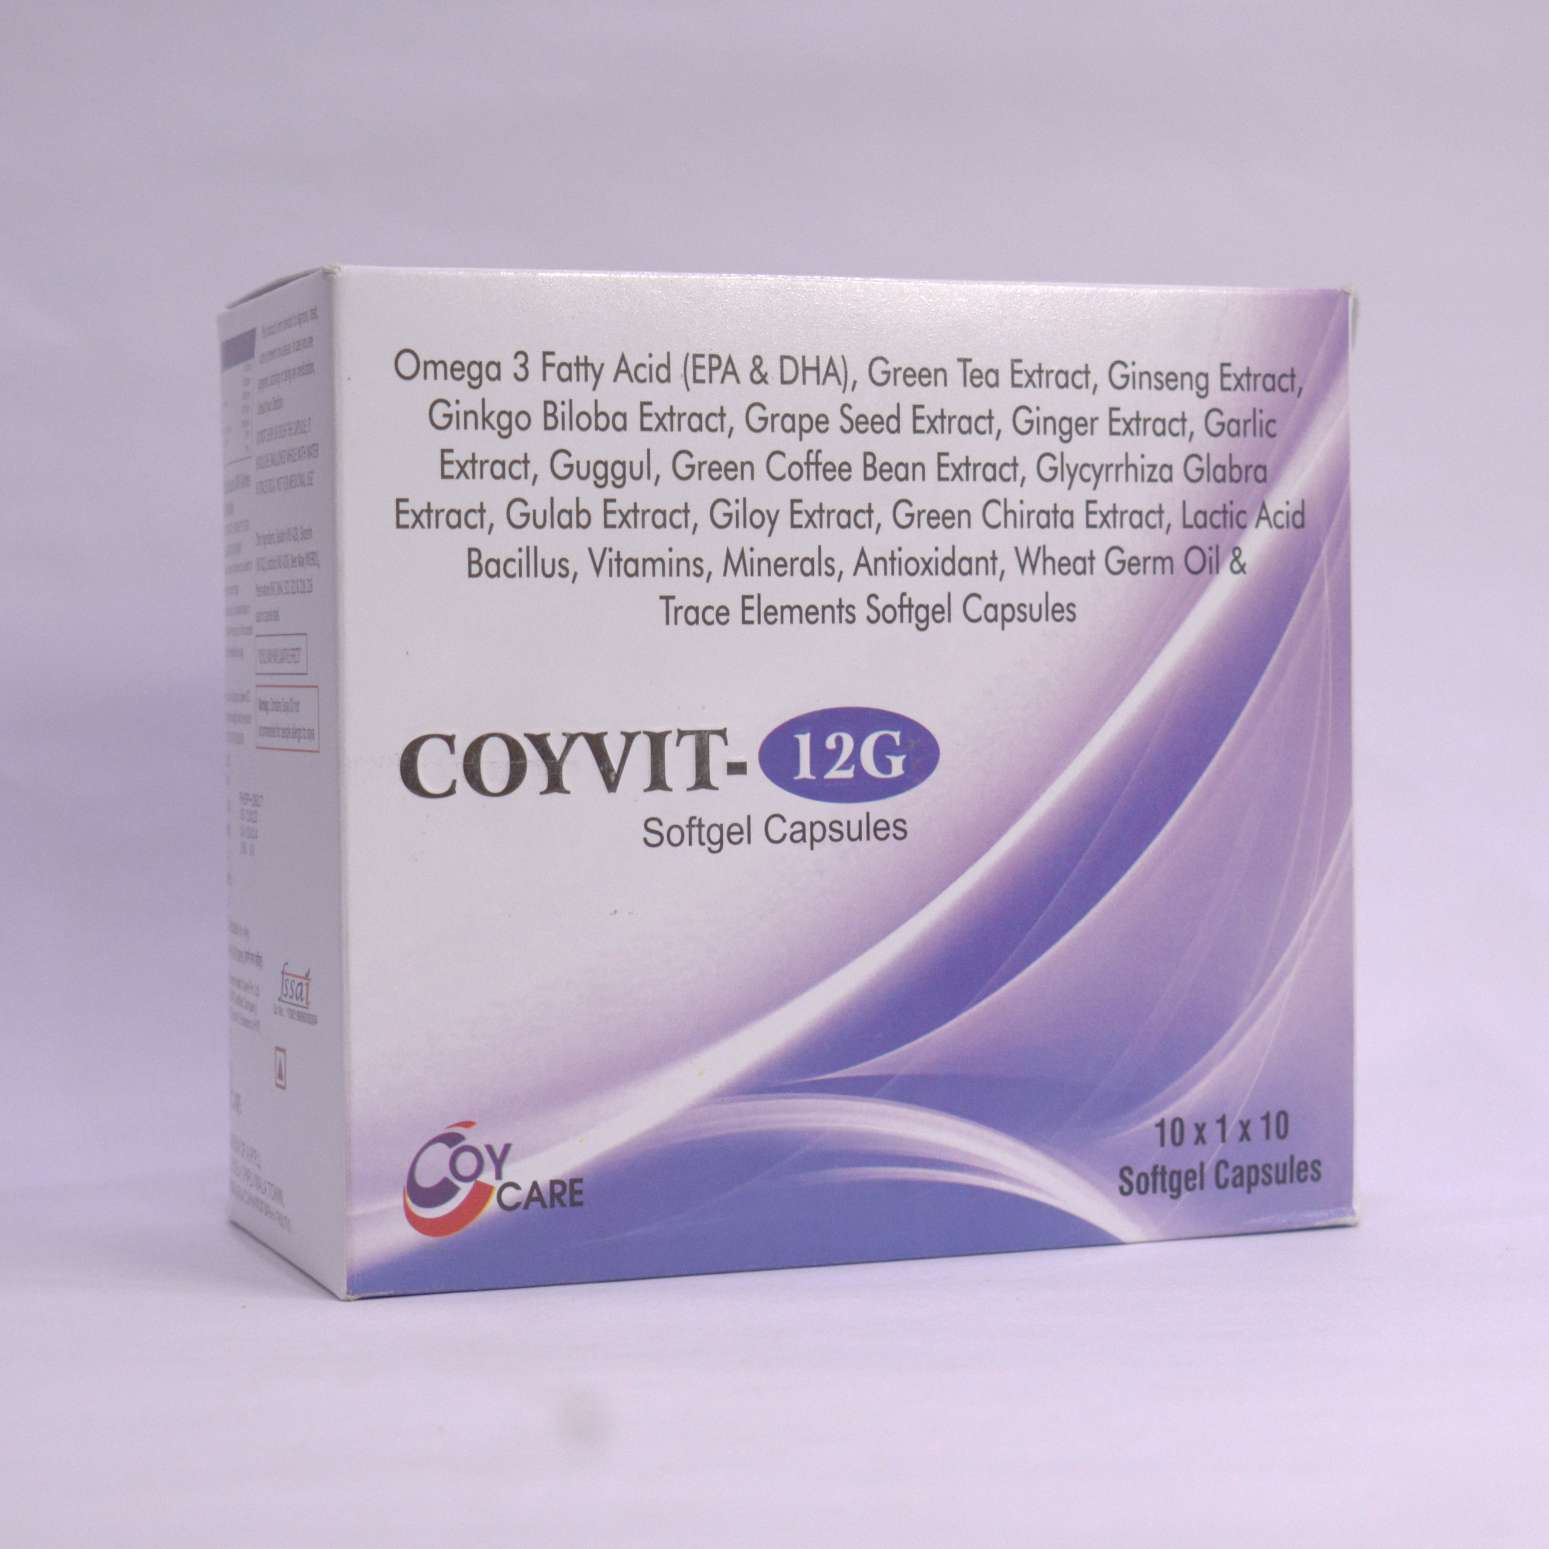 COYVIT-12G